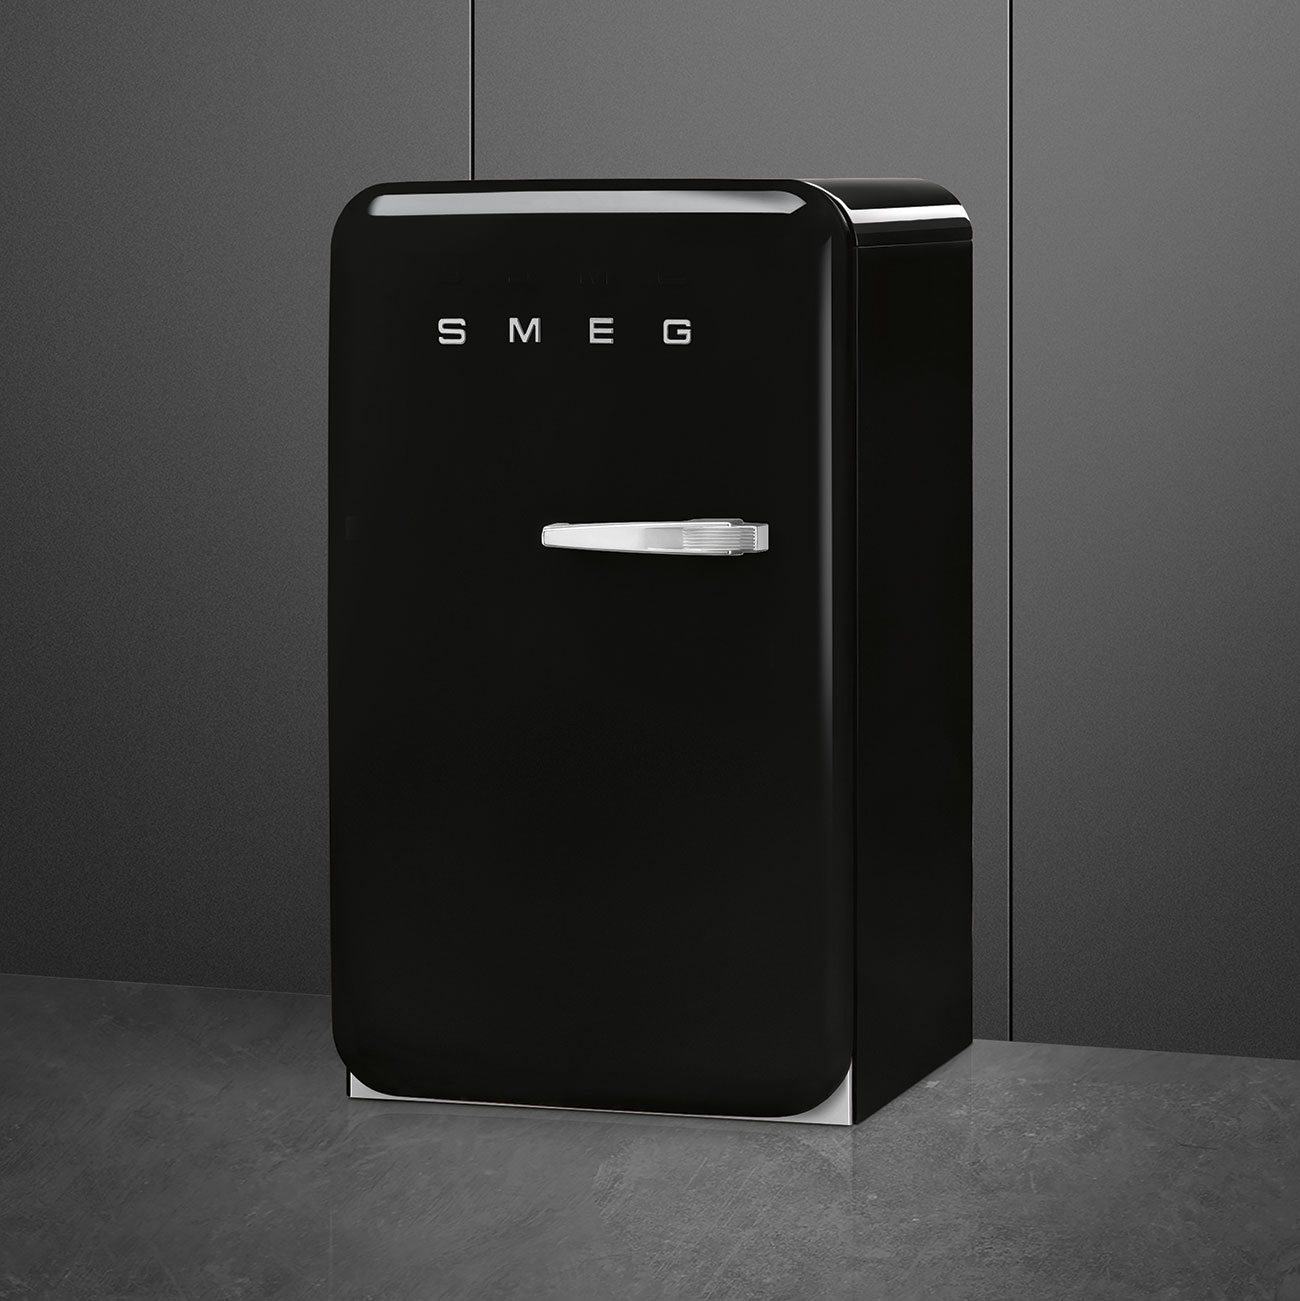 Black refrigerator - Smeg_4